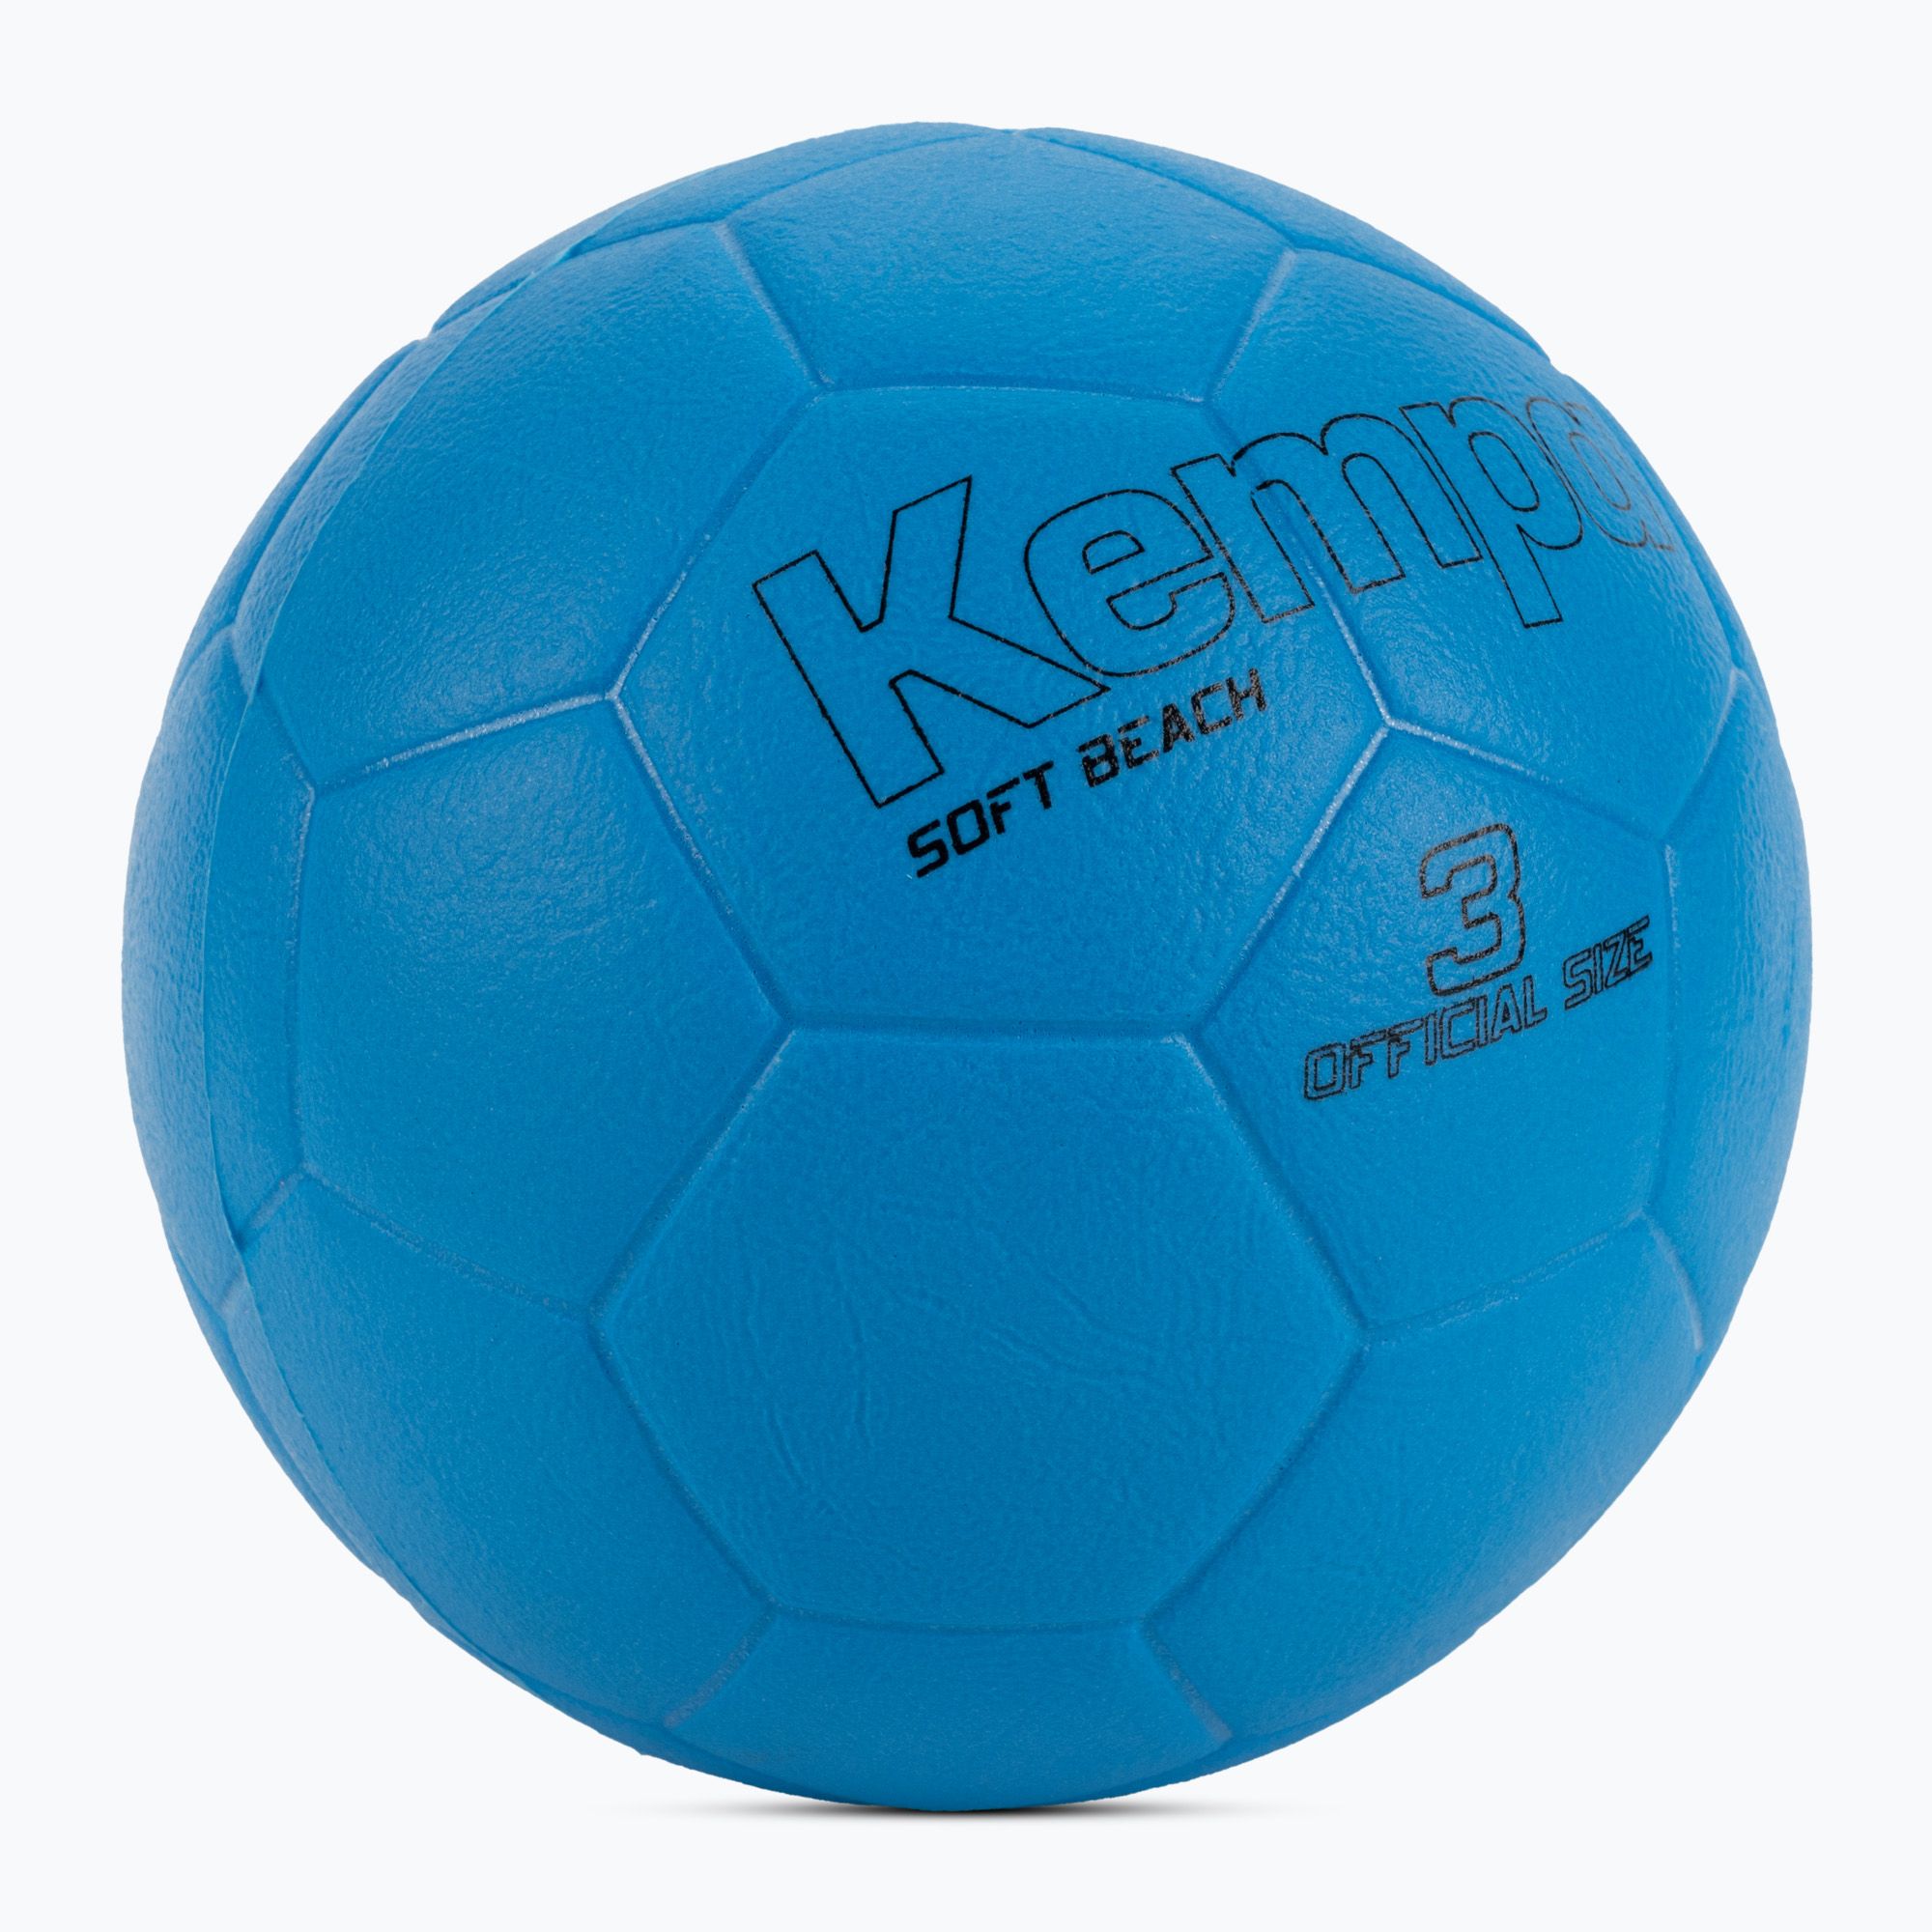 Piłka do piłki ręcznej Kempa Soft neonowa niebieska rozmiar 3 zdjęcie nr 2